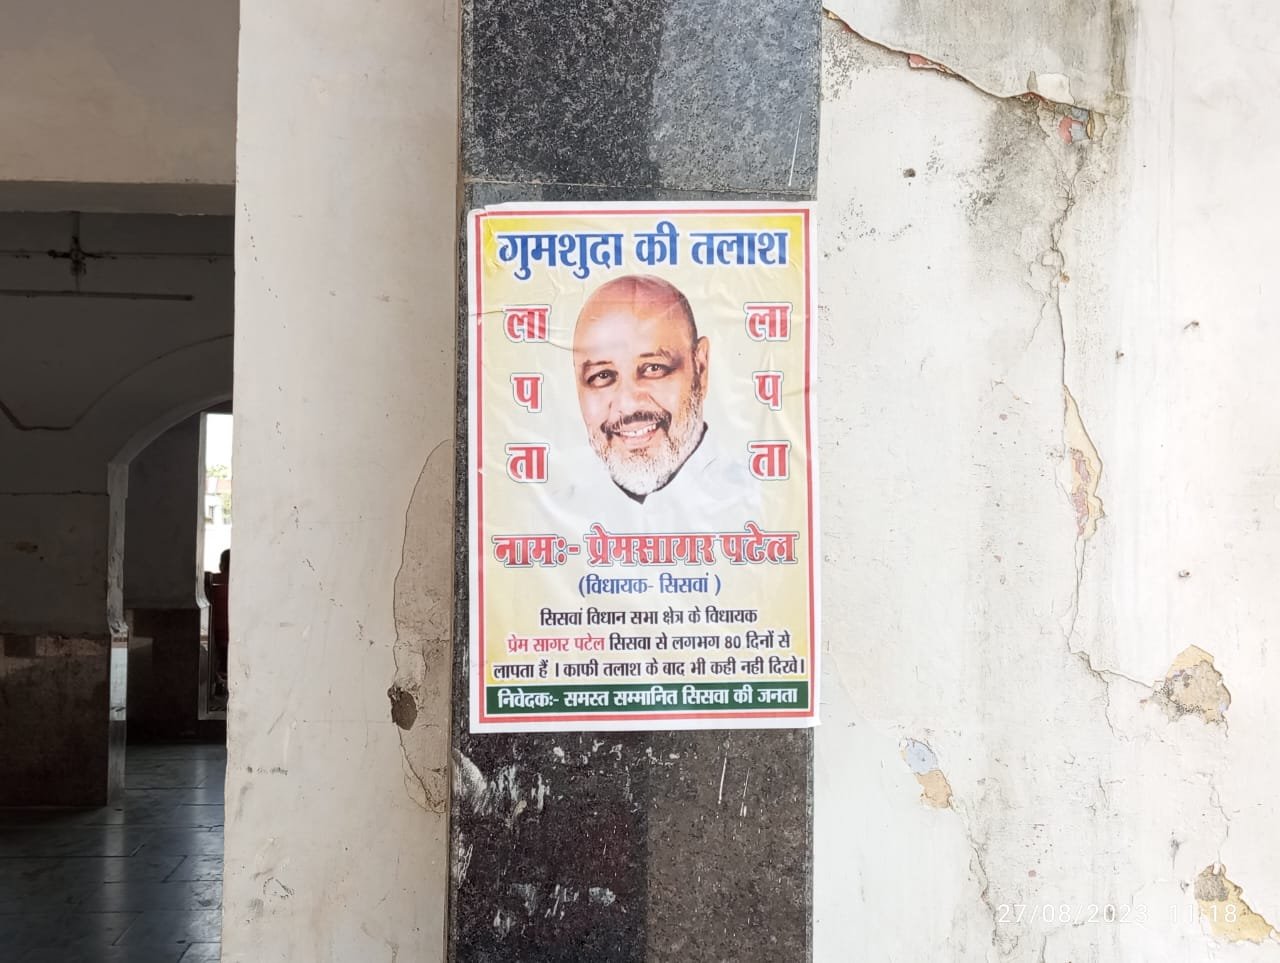 Maharajganj:भाजपा विधायक प्रेम सागर पटेल का सिसवा में गुमशुदगी का पोस्टर चस्पा, जांच में जुटी पुलिस